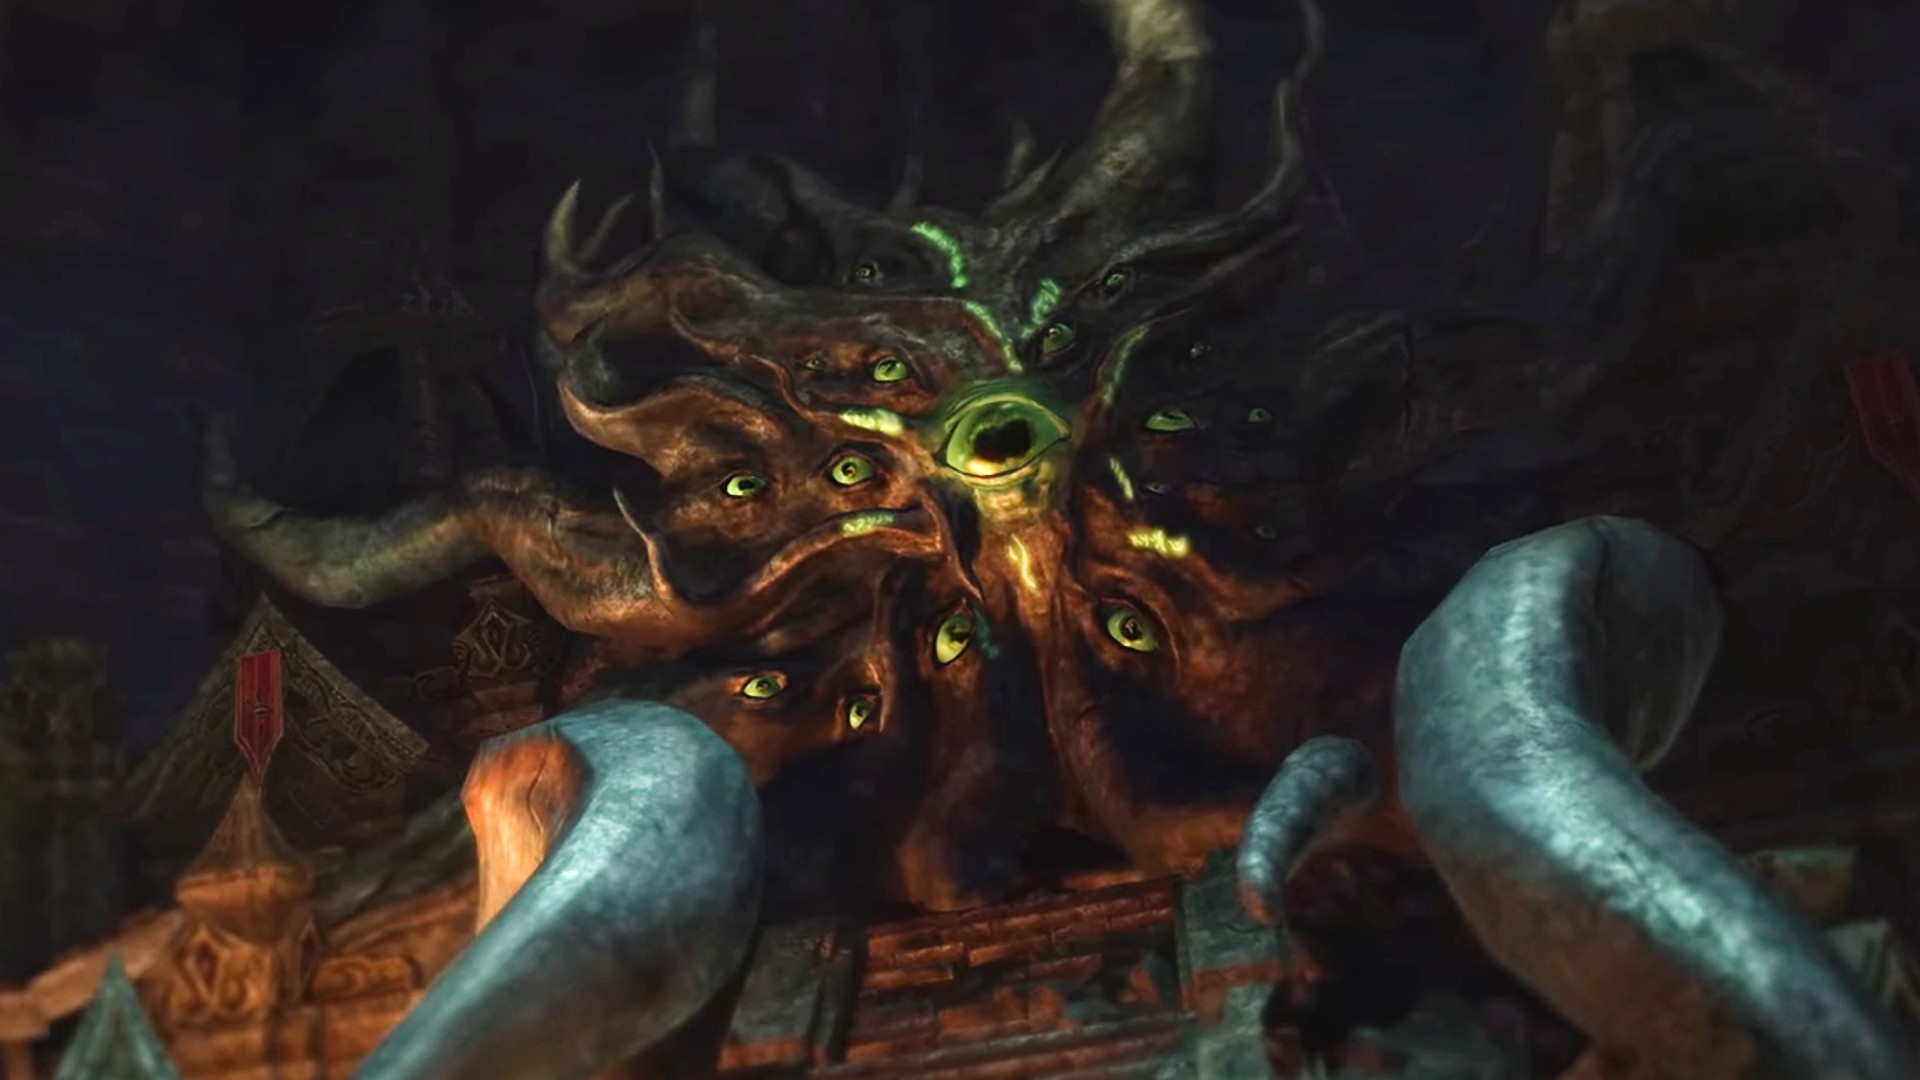 Elder Scrolls Online: Necrom chega em junho